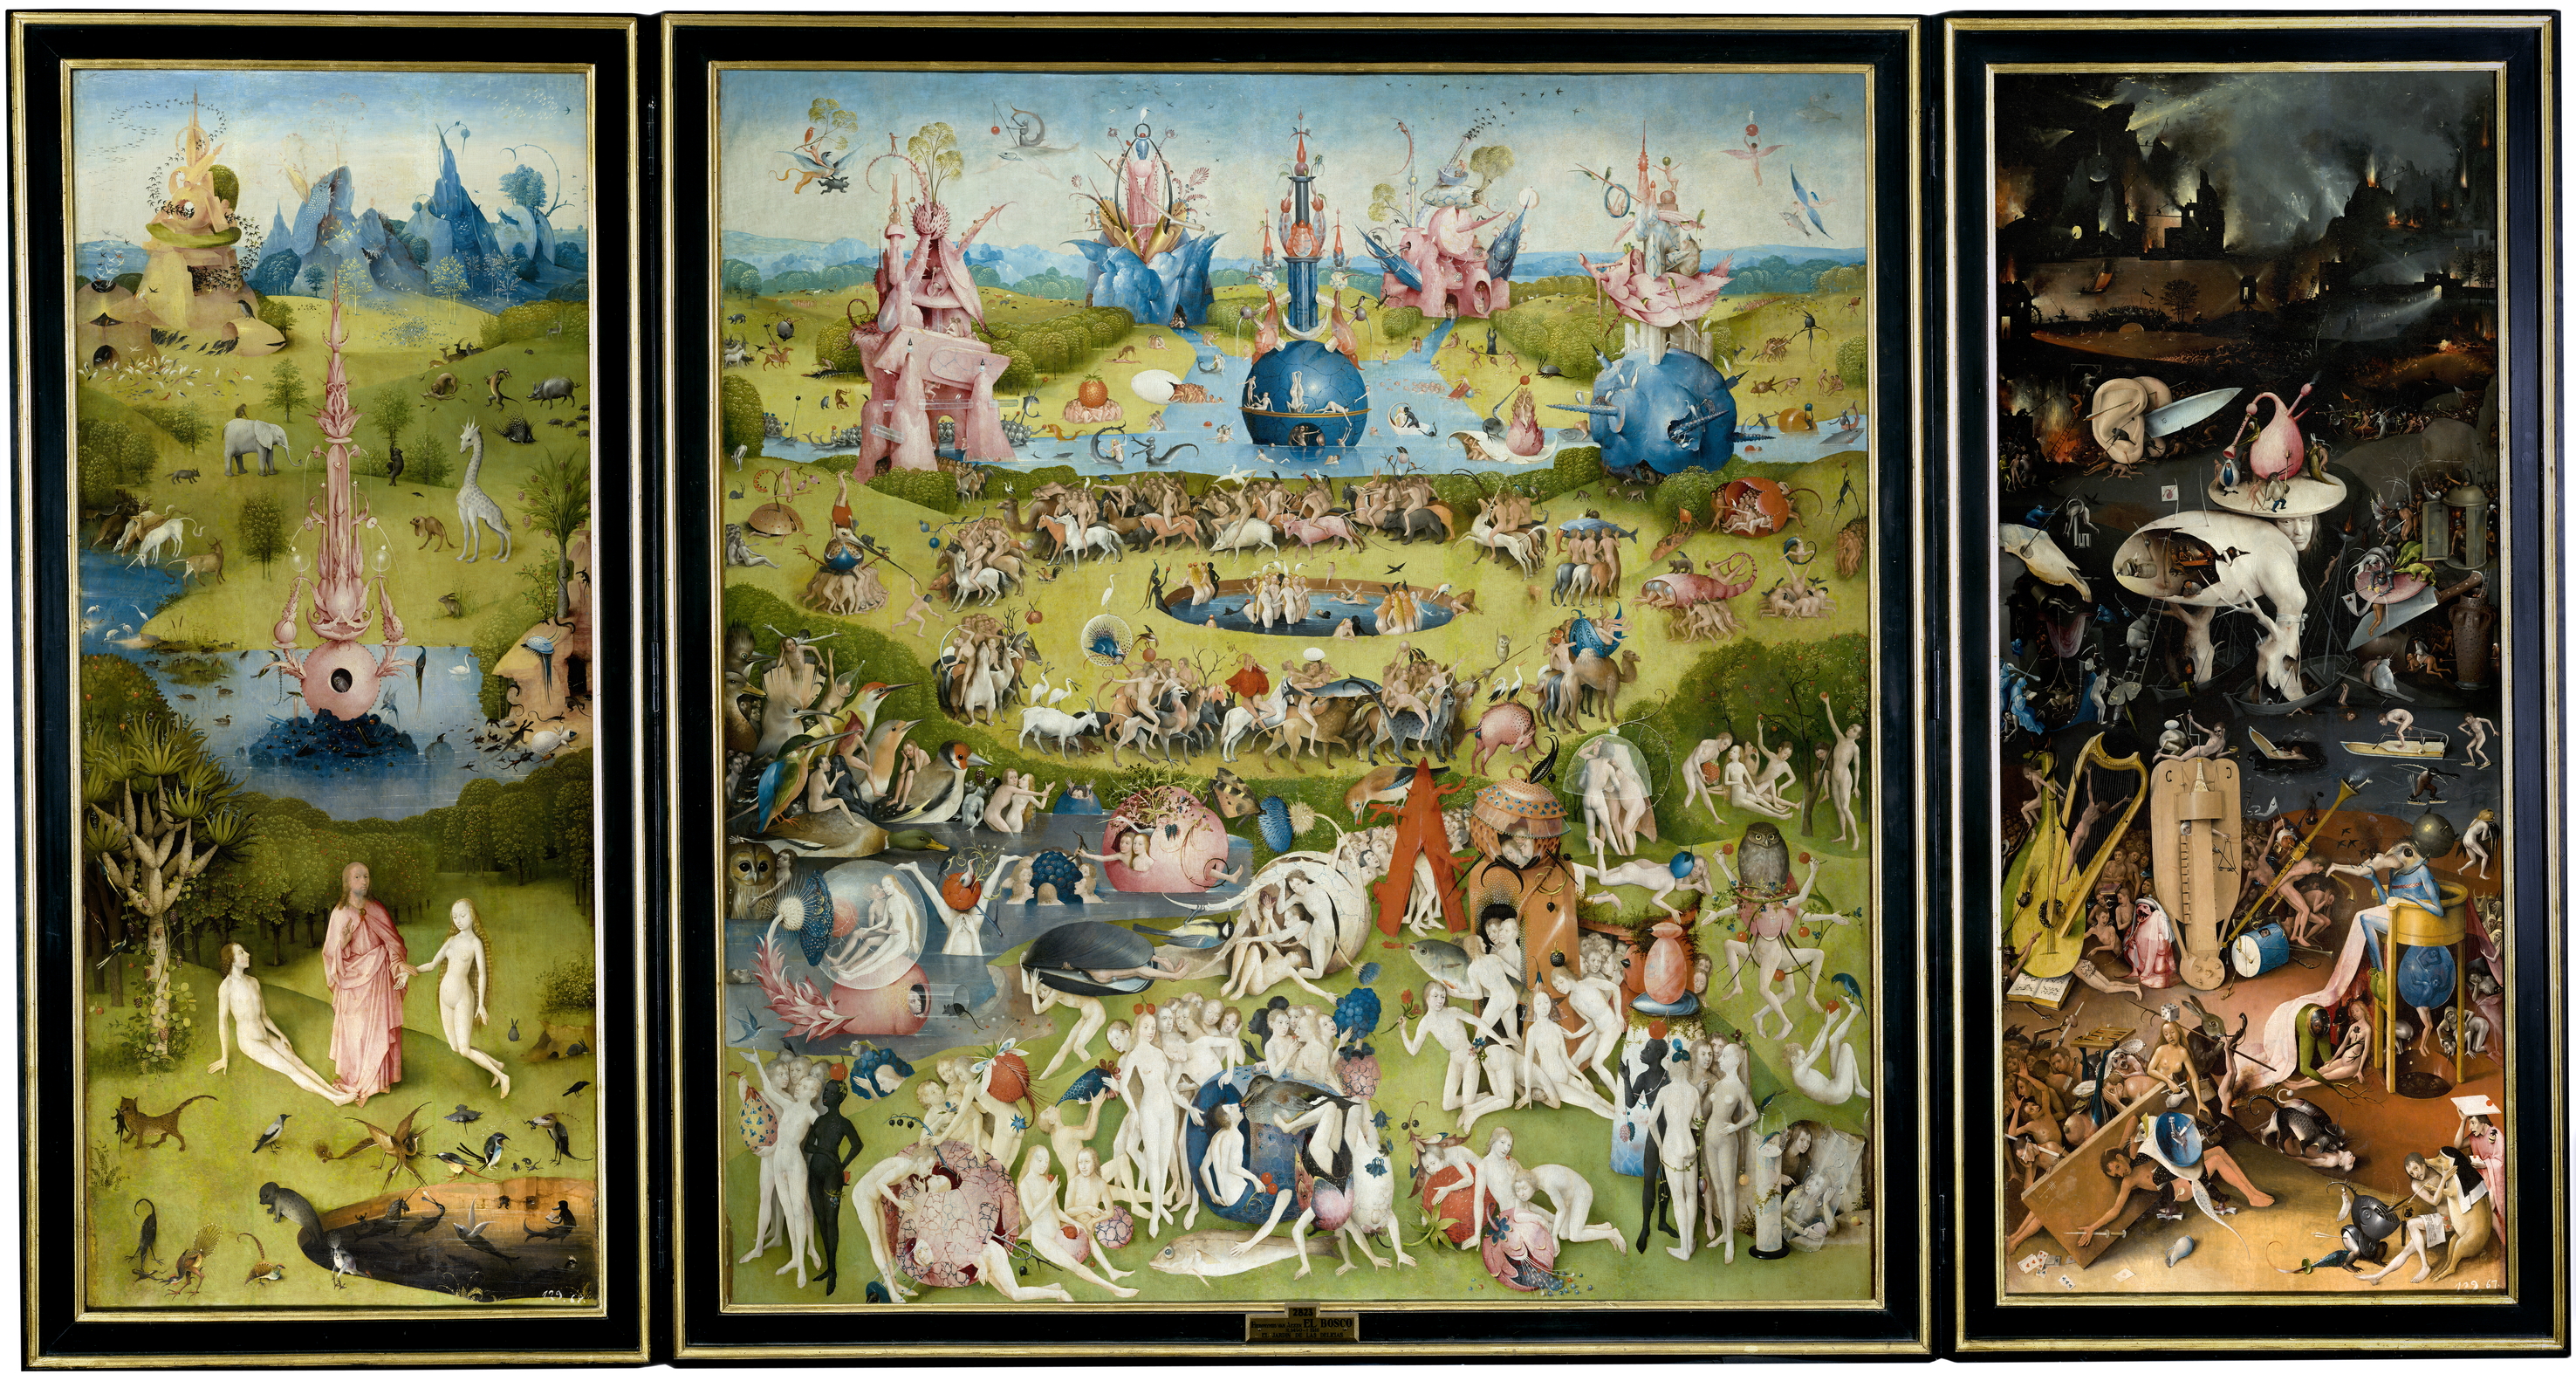 Il trittico del Giardino delle Delizie di Hieronymus Bosch 